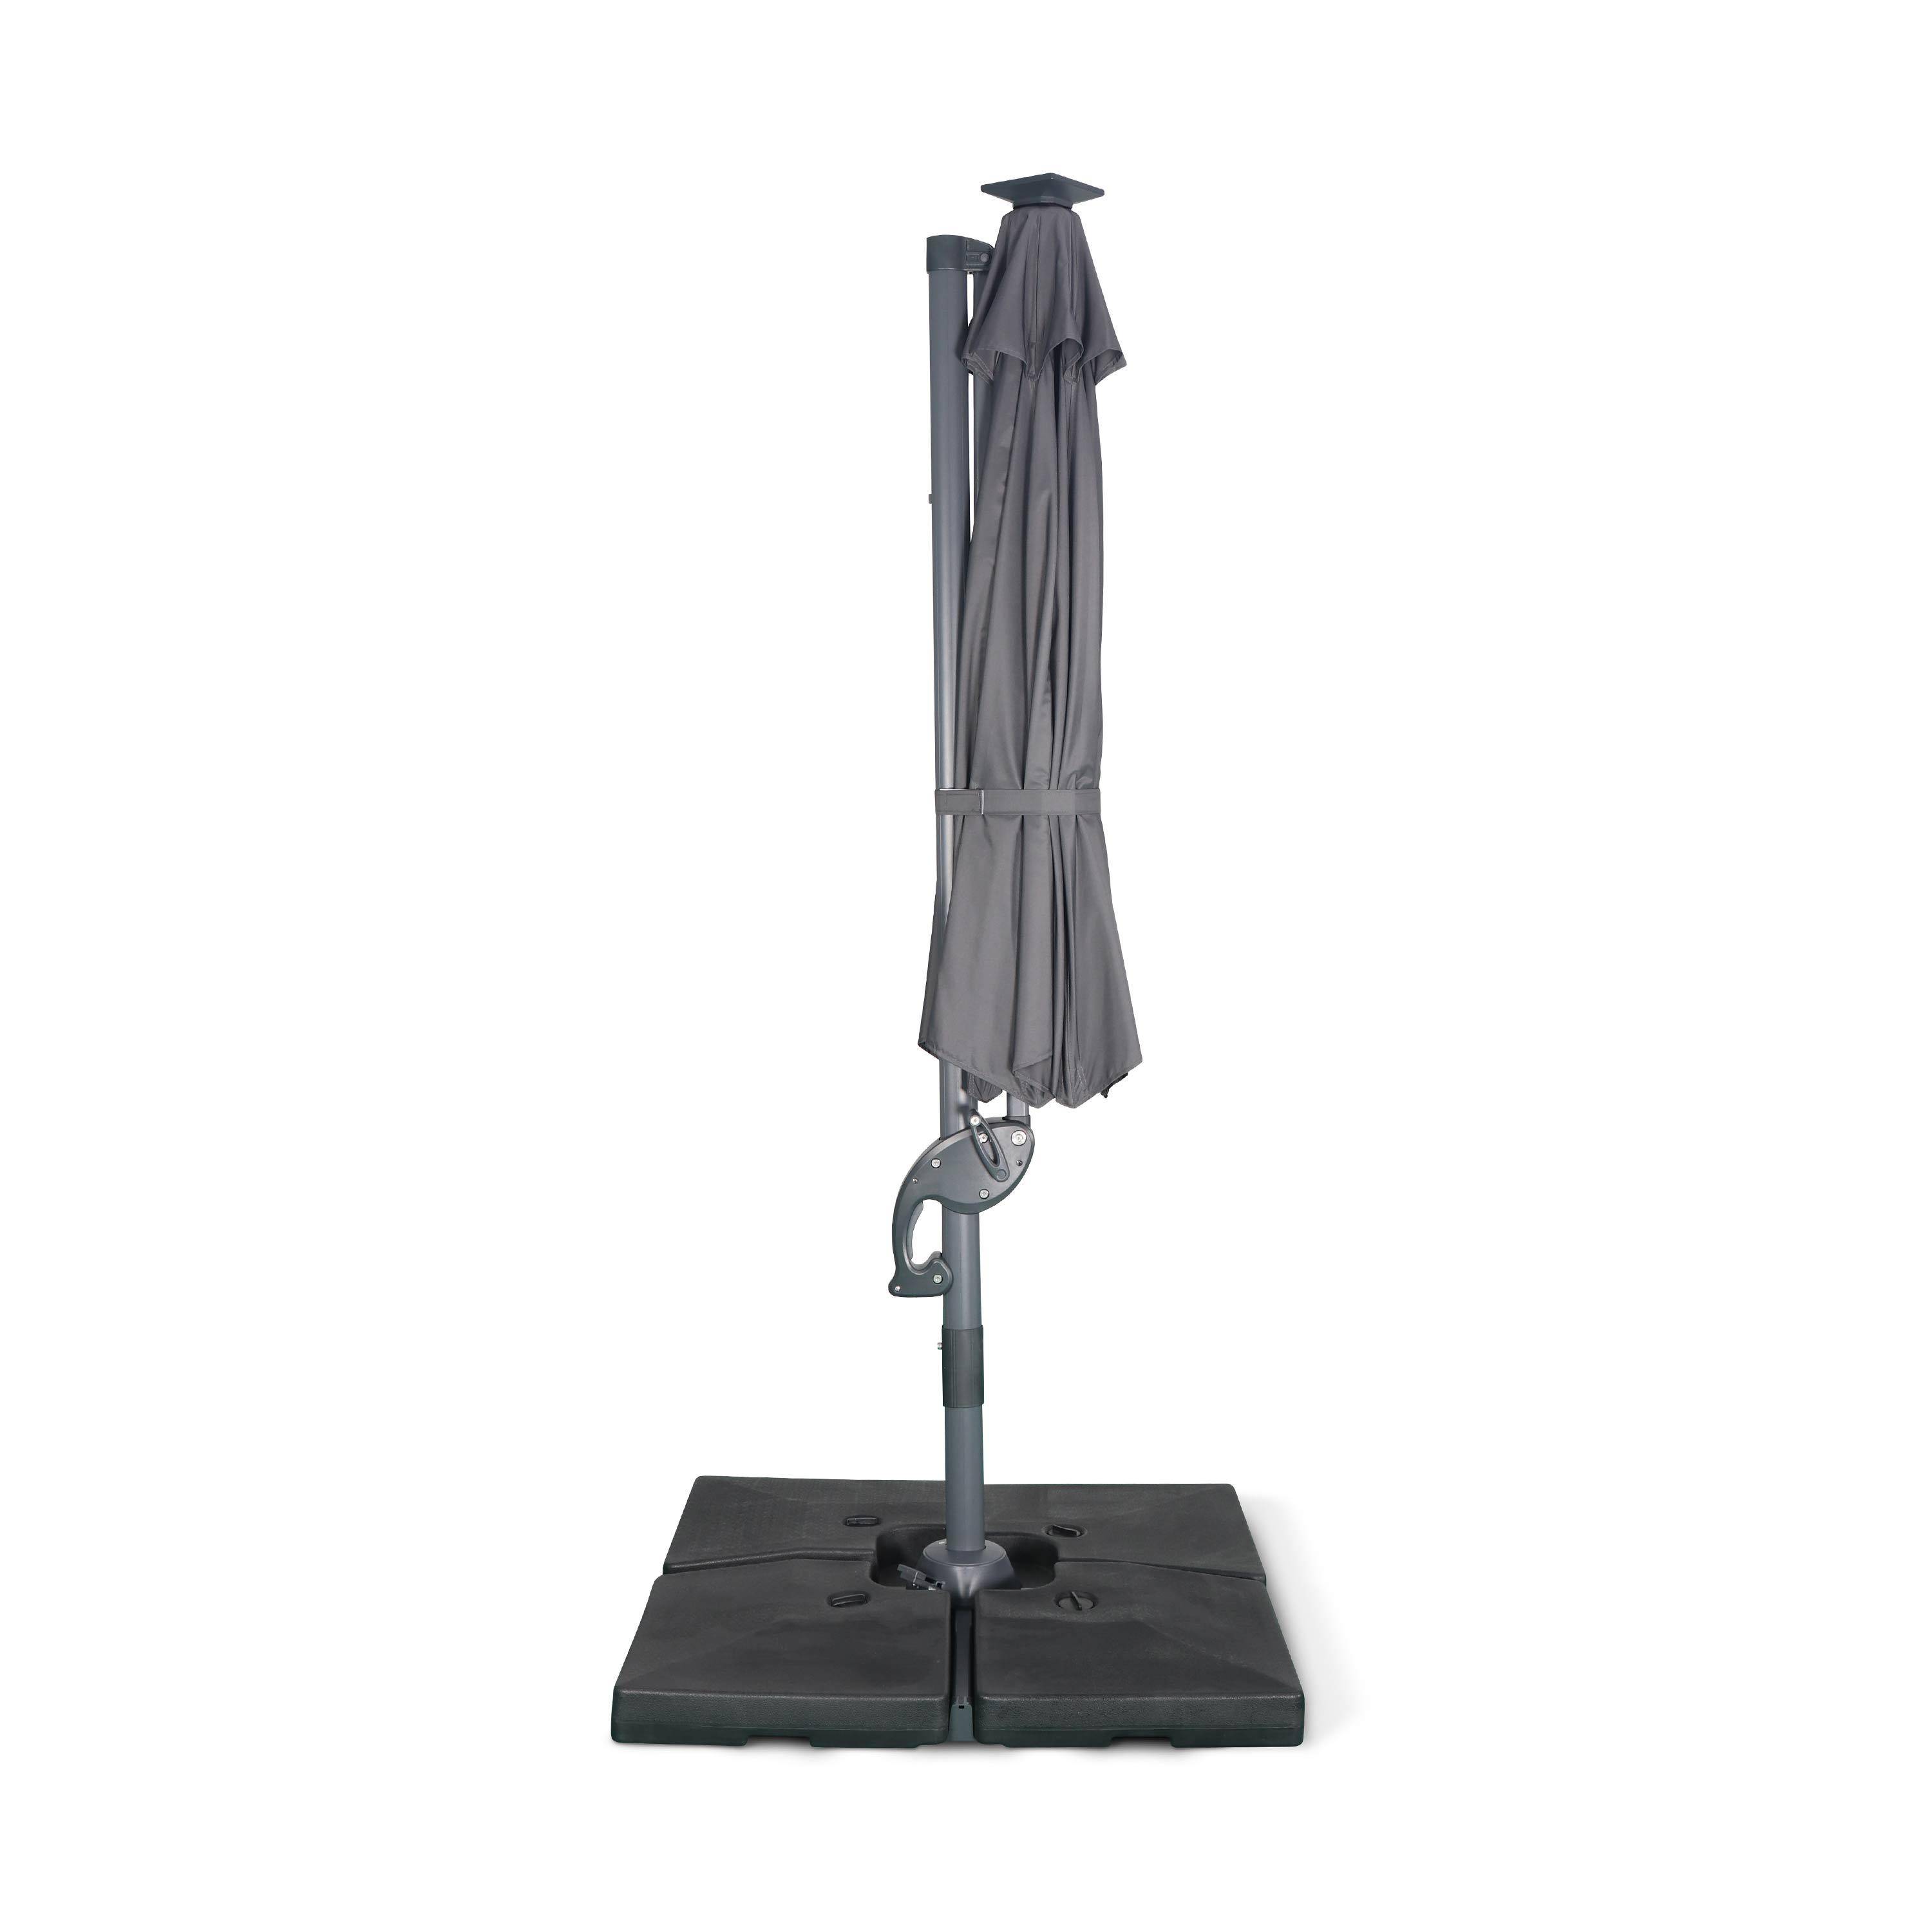 Ombrellone led tondo decentrato Ø300 cm - Dinard - Grigio - ombrellone decentrato, basculante, ribaltabile e girevole 360°, stecche in fibra di vetro Photo6